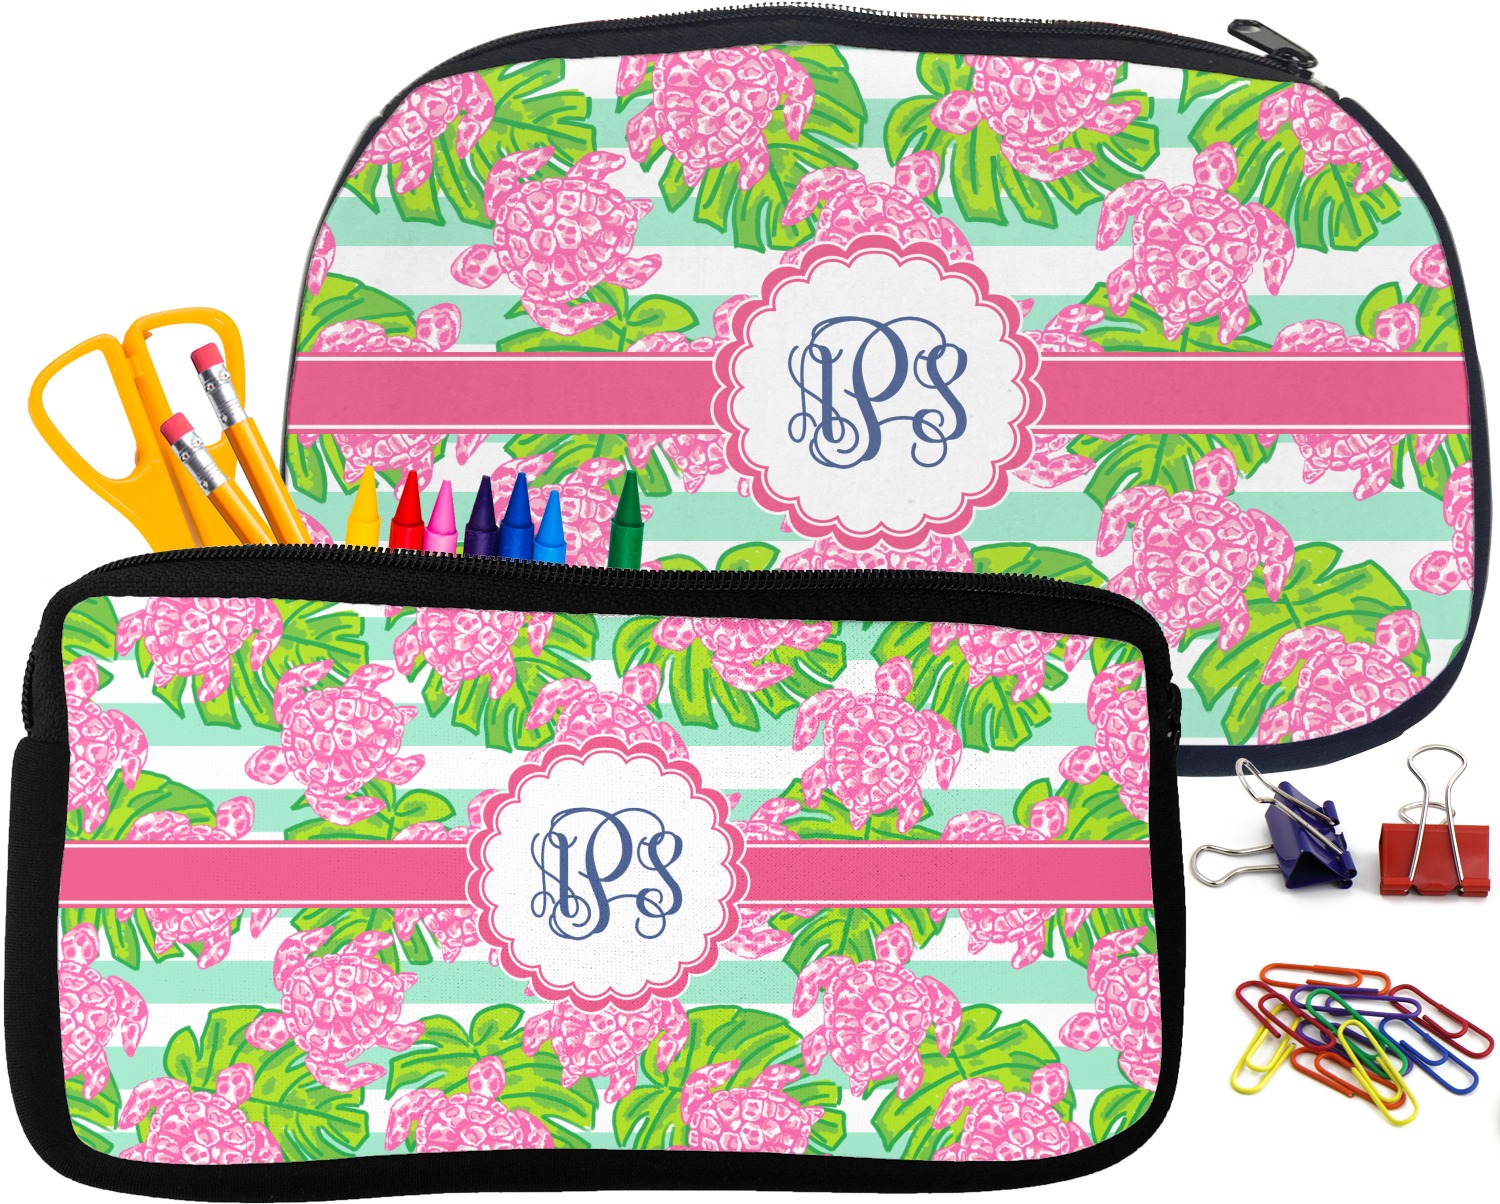 Preppy Pencil Case, Preppy Pencil Pouch, Preppy School Supplies